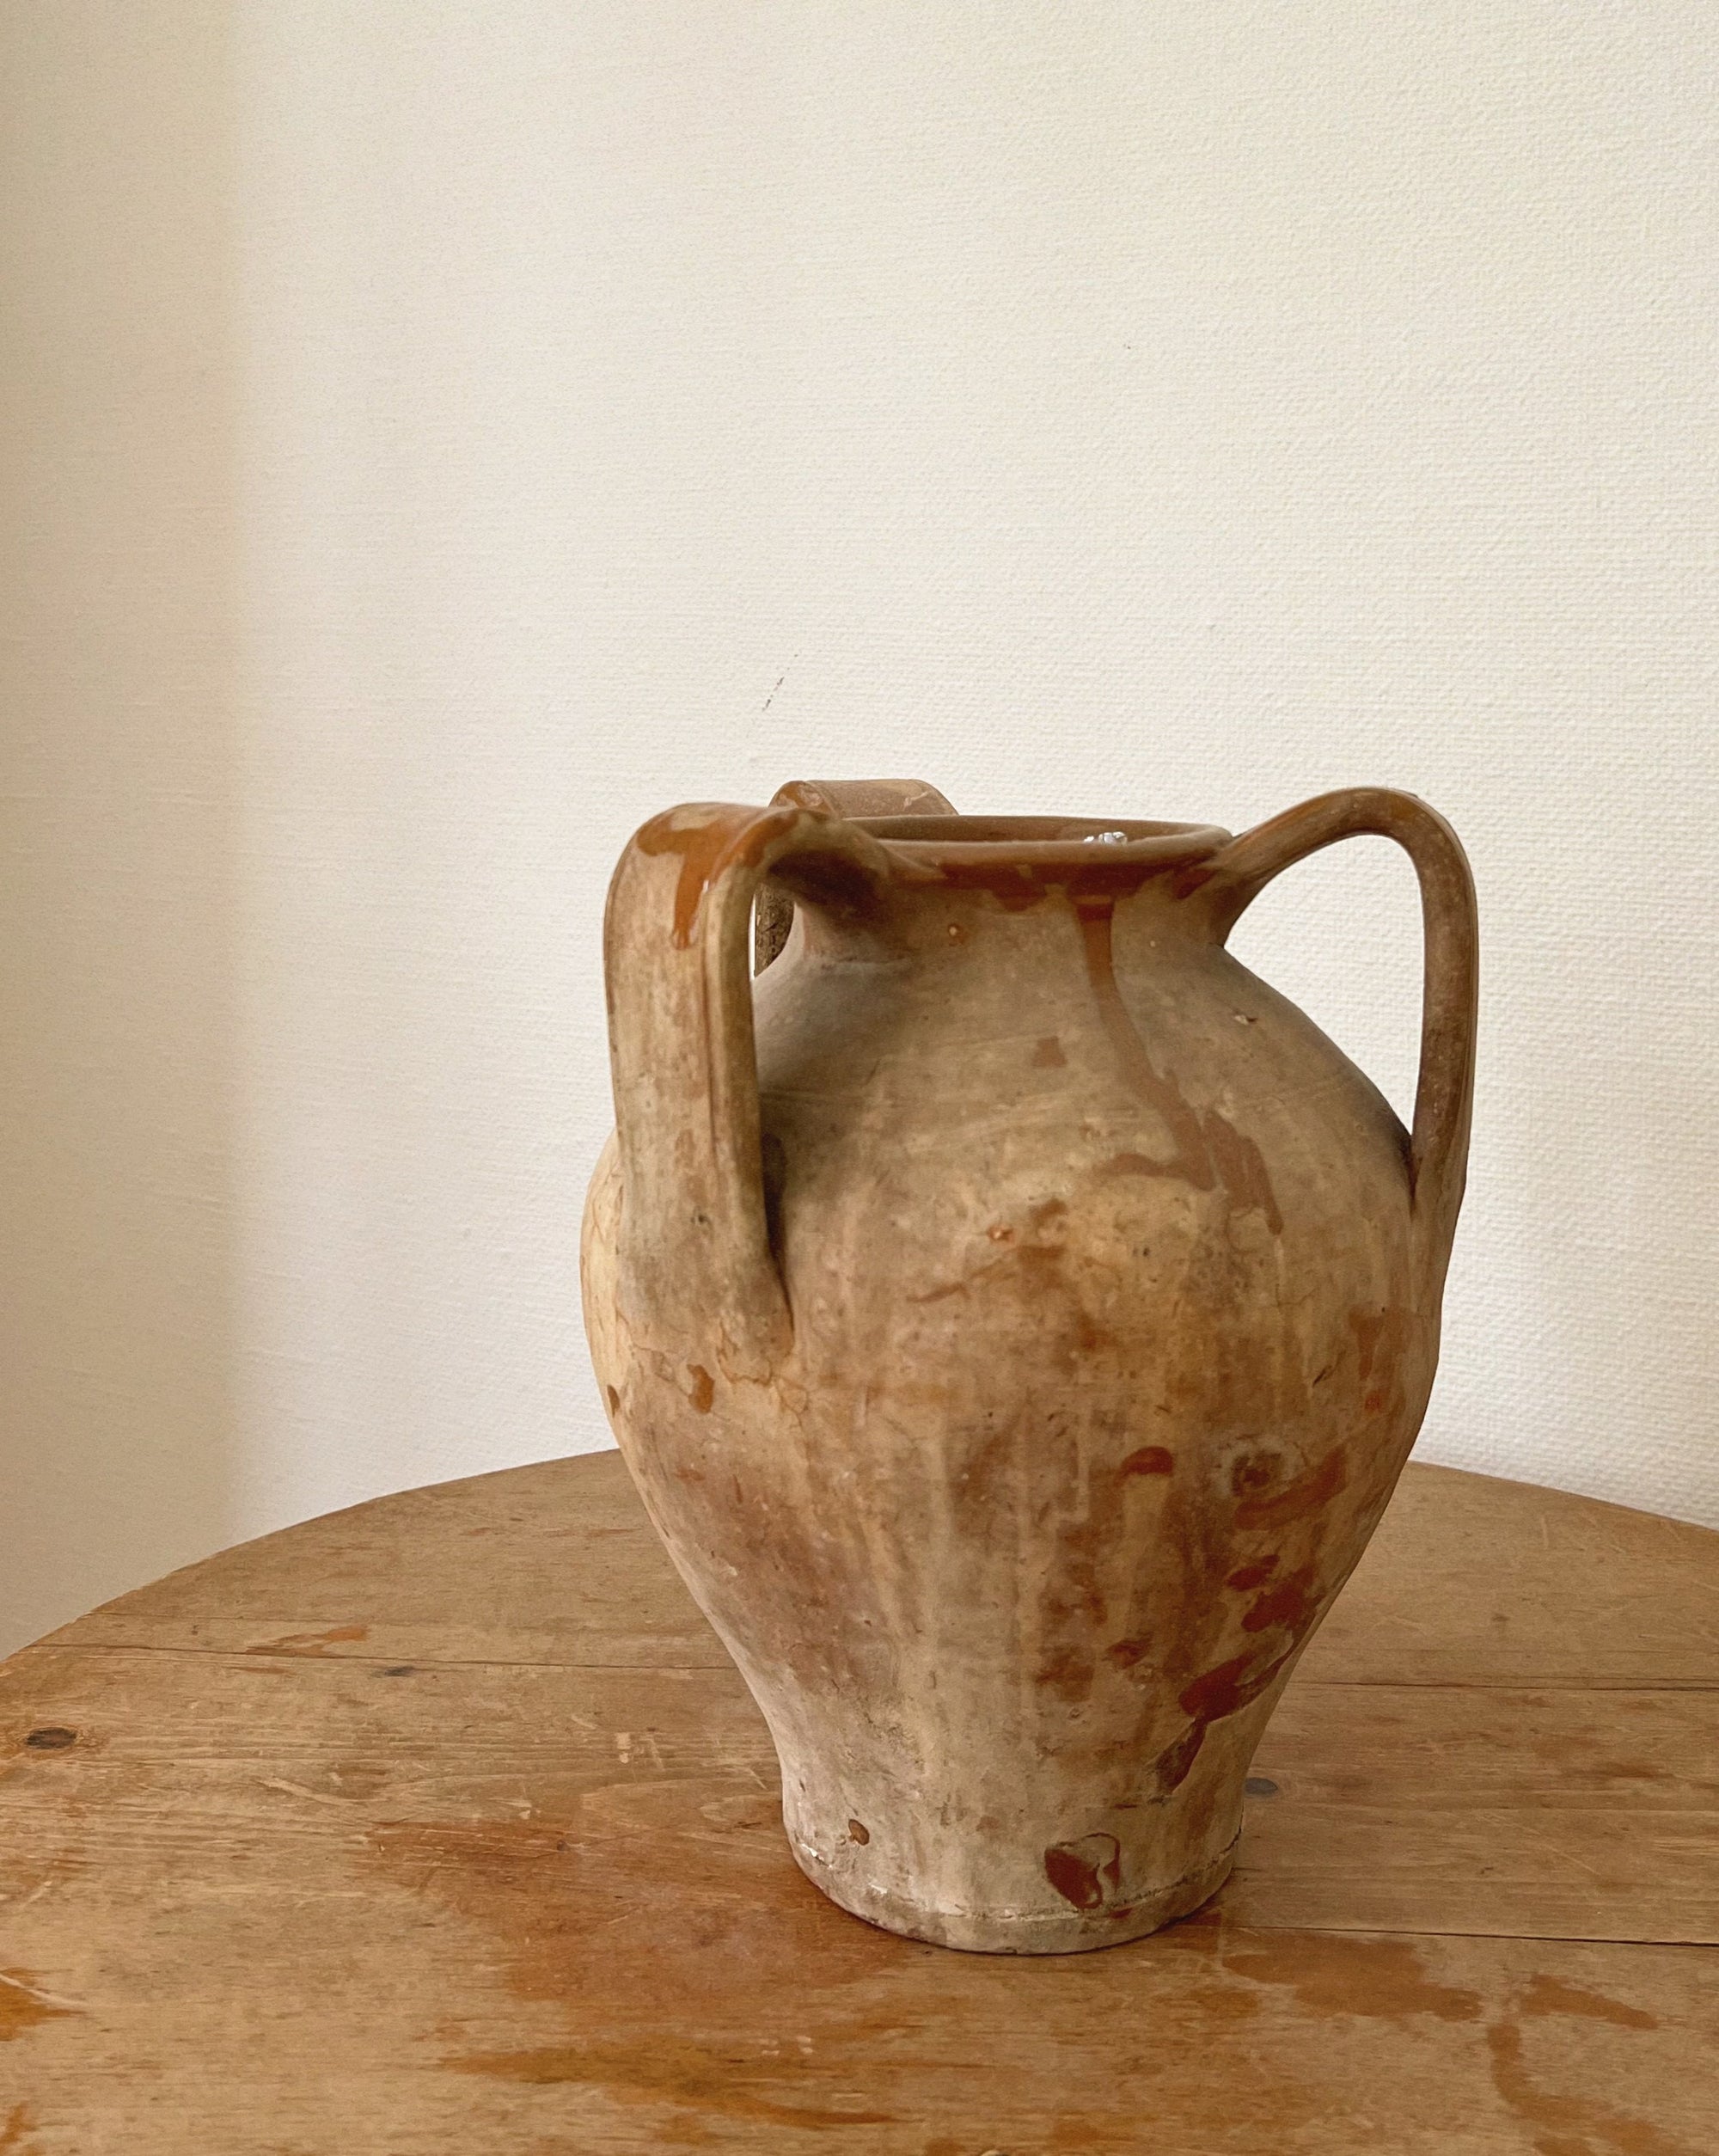 Antique amphora jars